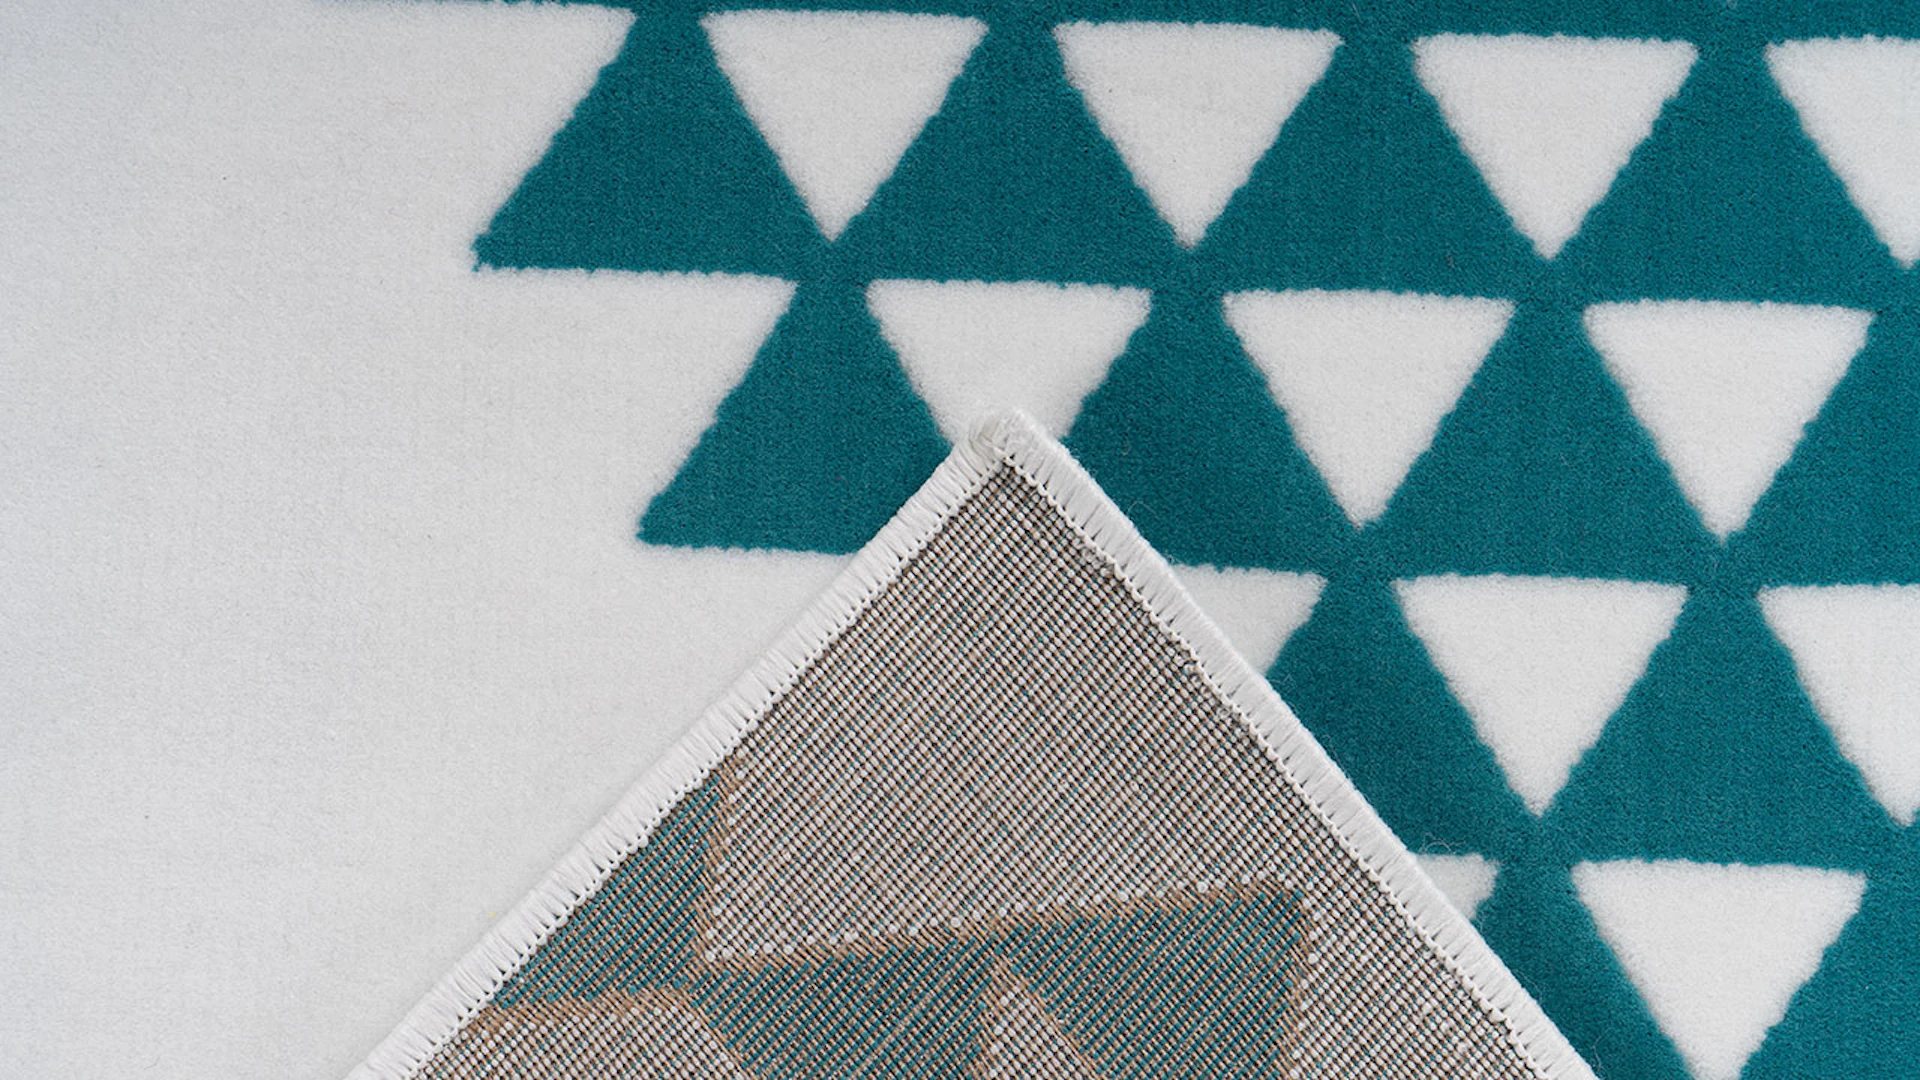 planeo carpet - Esperanto 625 white / turquoise 200 x 290 cm